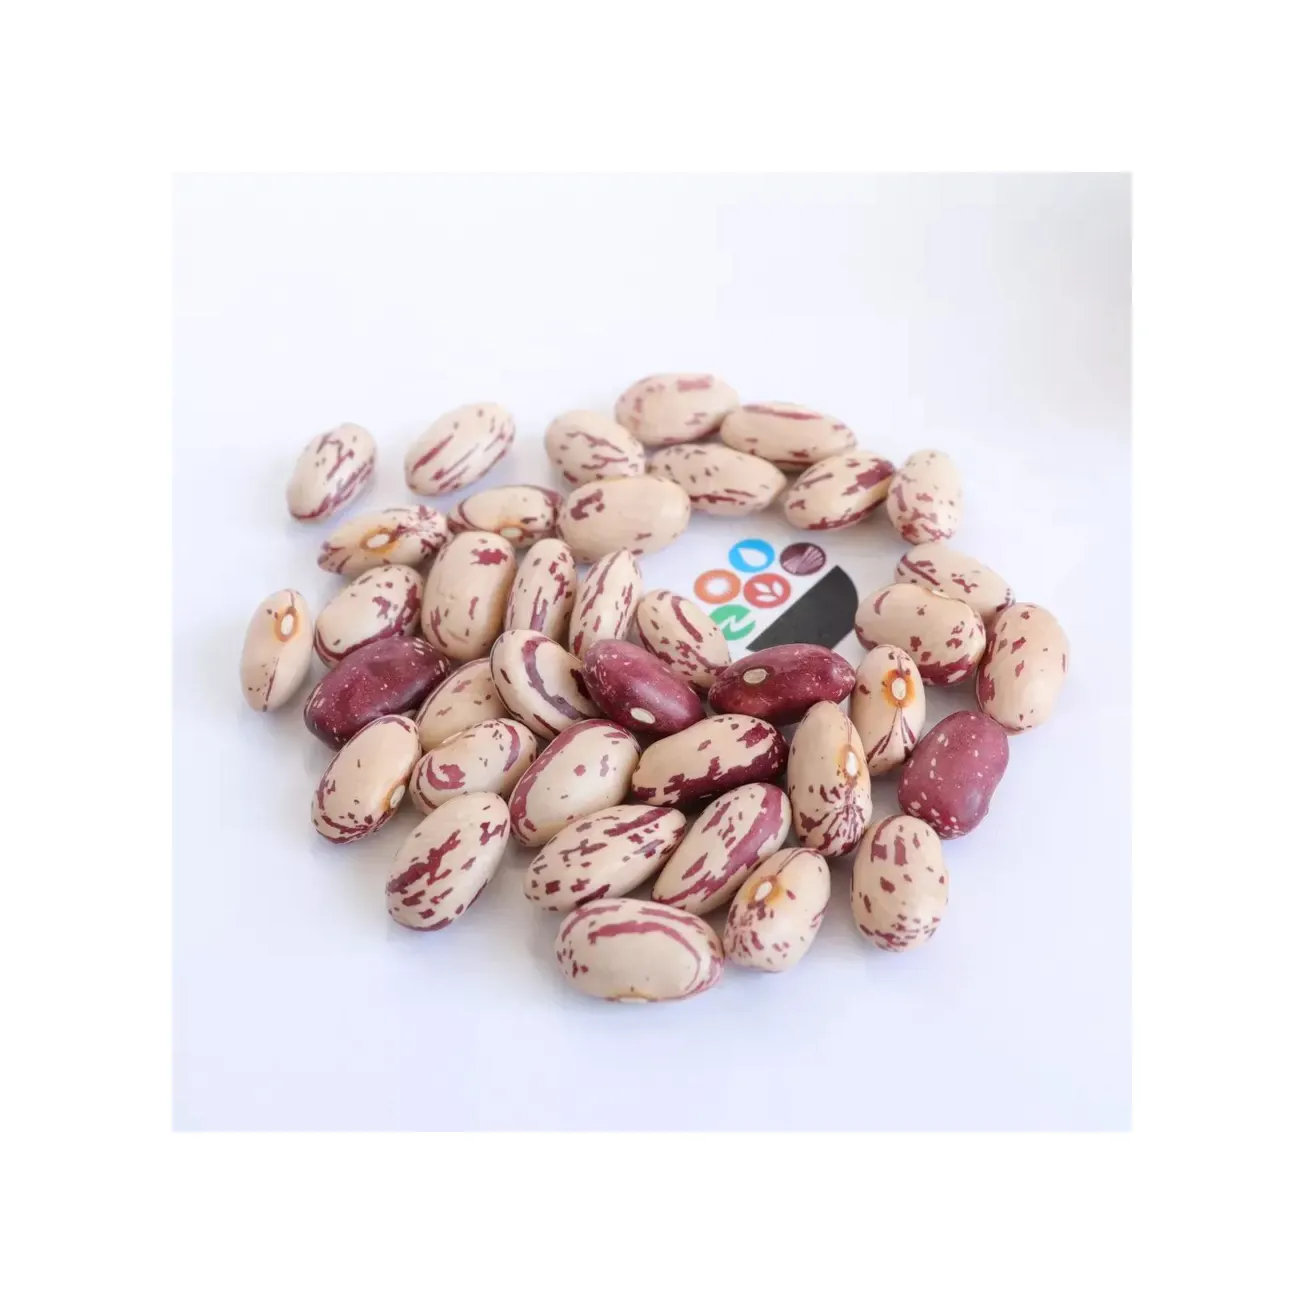 가벼운 얼룩덜룩 한 신장 콩 설탕 콩 핀또 콩 판매 하이 퀄리티 긴 모양 품질 다크 레드, 다크 브라운, 설탕 콩 또는 P